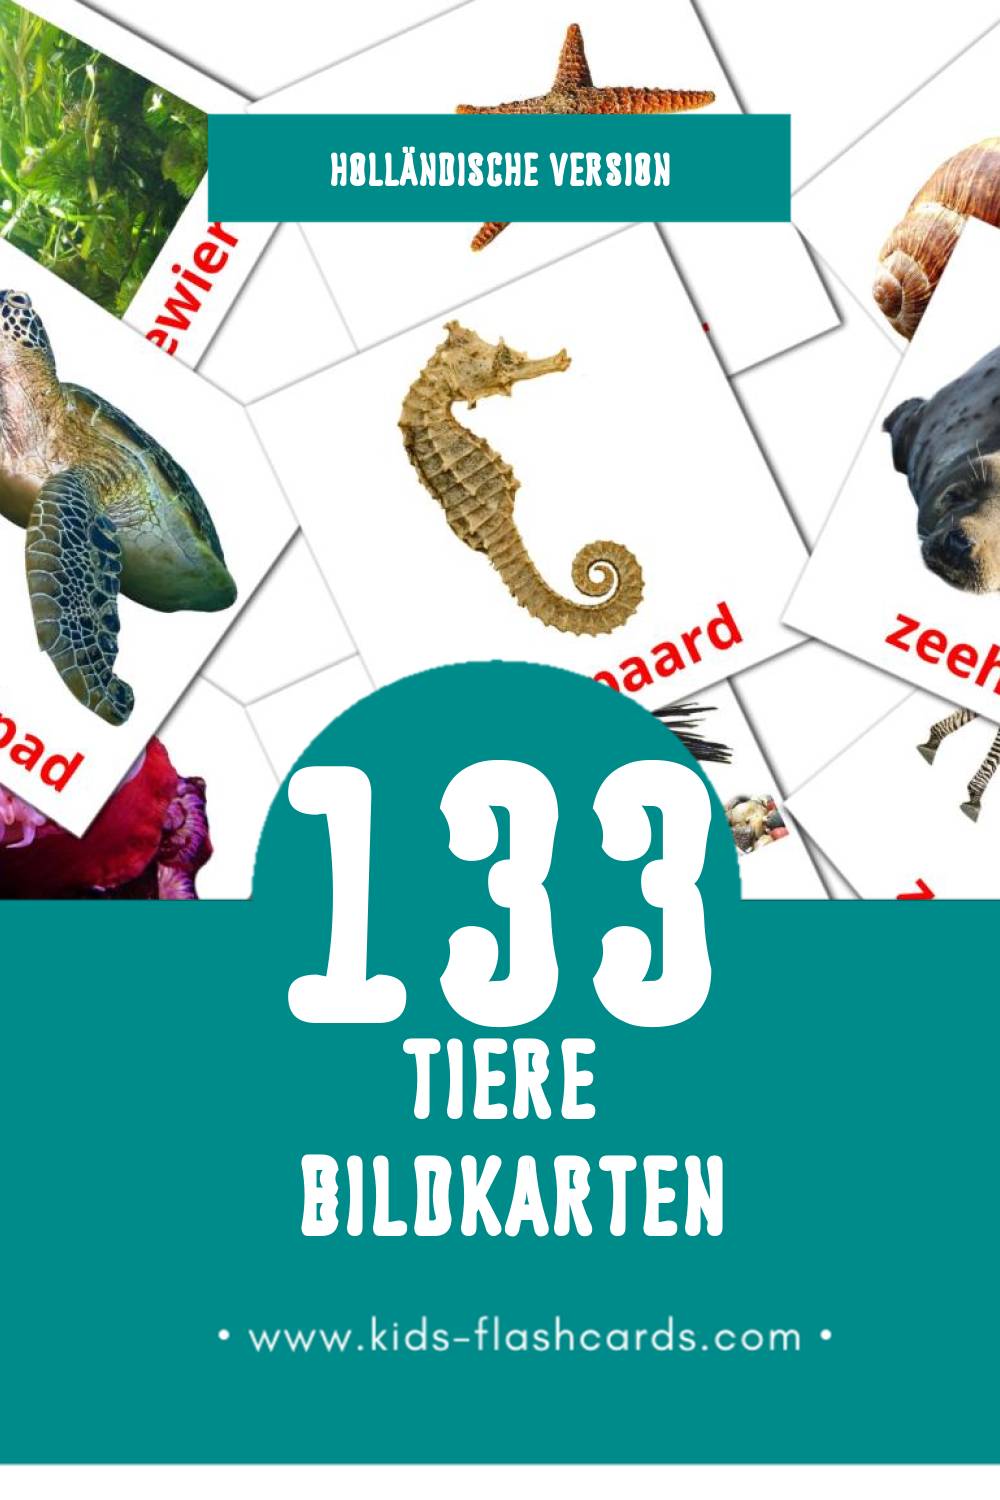 Visual Dieren Flashcards für Kleinkinder (133 Karten in Holländisch)